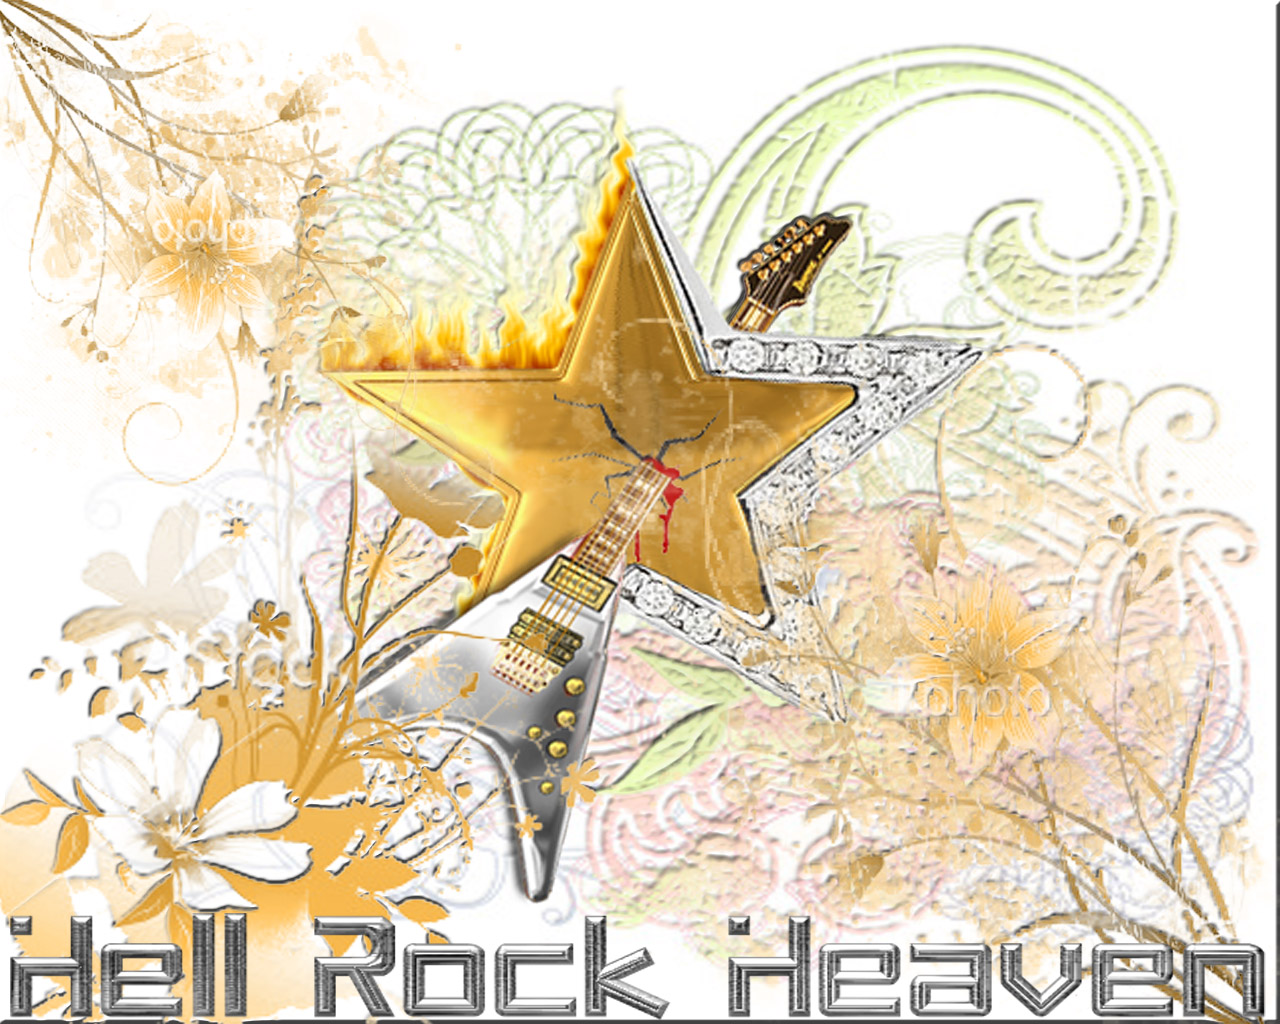 H. R. H. (Hell Rock Heaven)